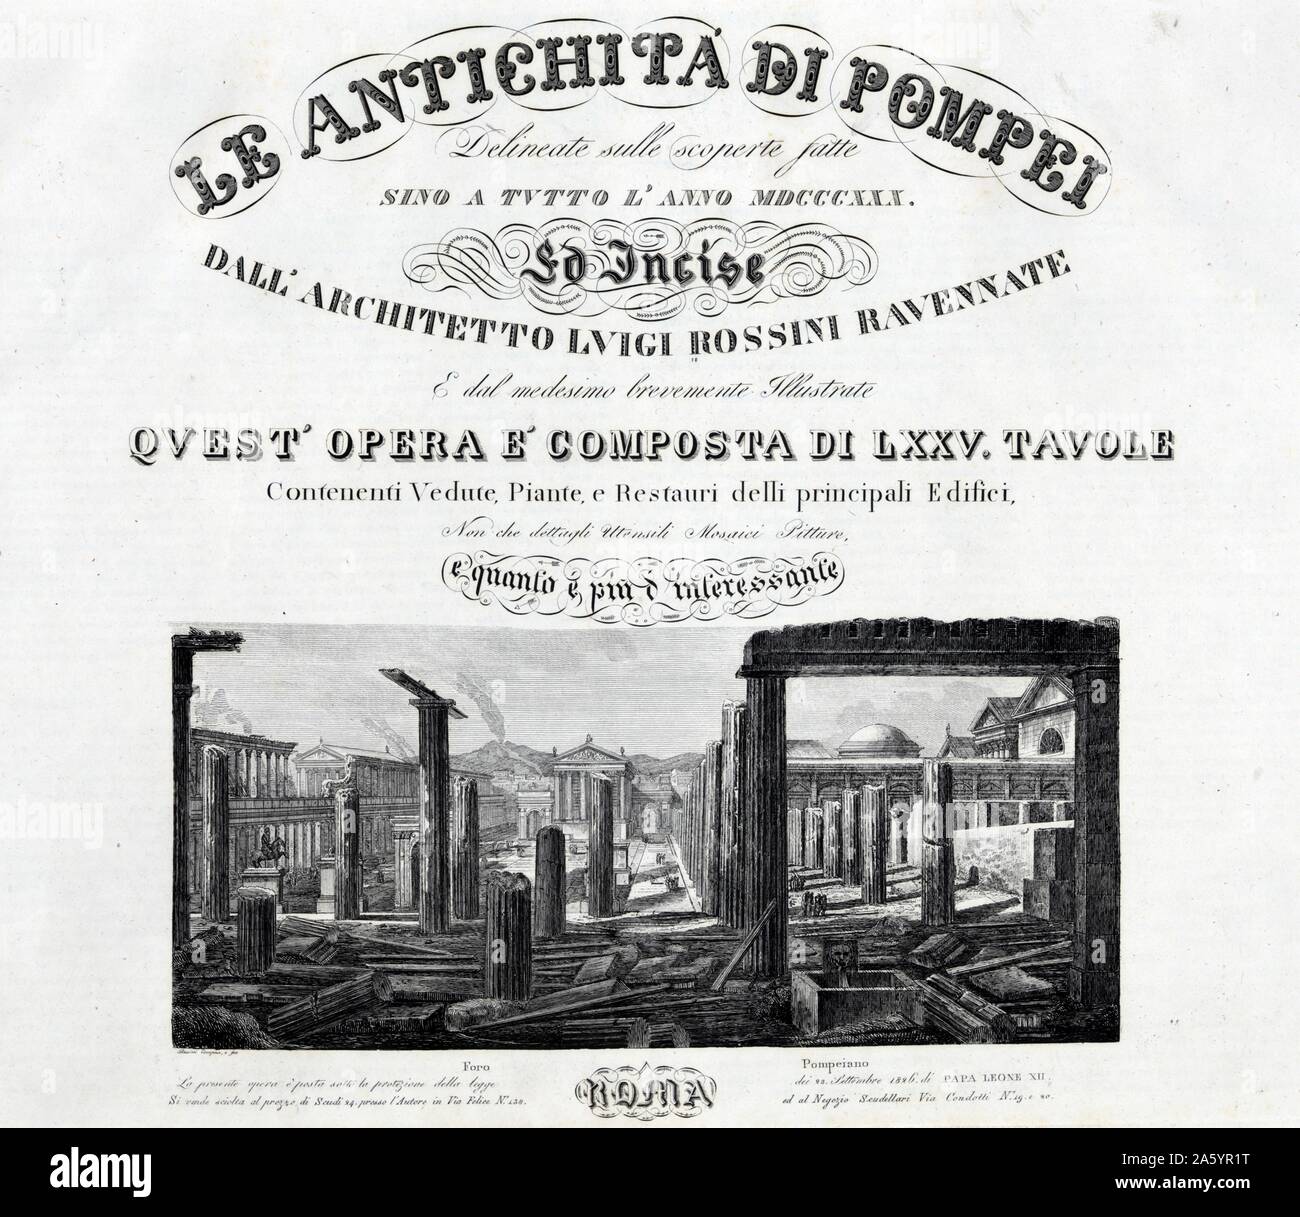 L'illustration de la page de titre d'un livre d'illustrations des ruines romaines de Pompéi en Italie vers 1840 Banque D'Images